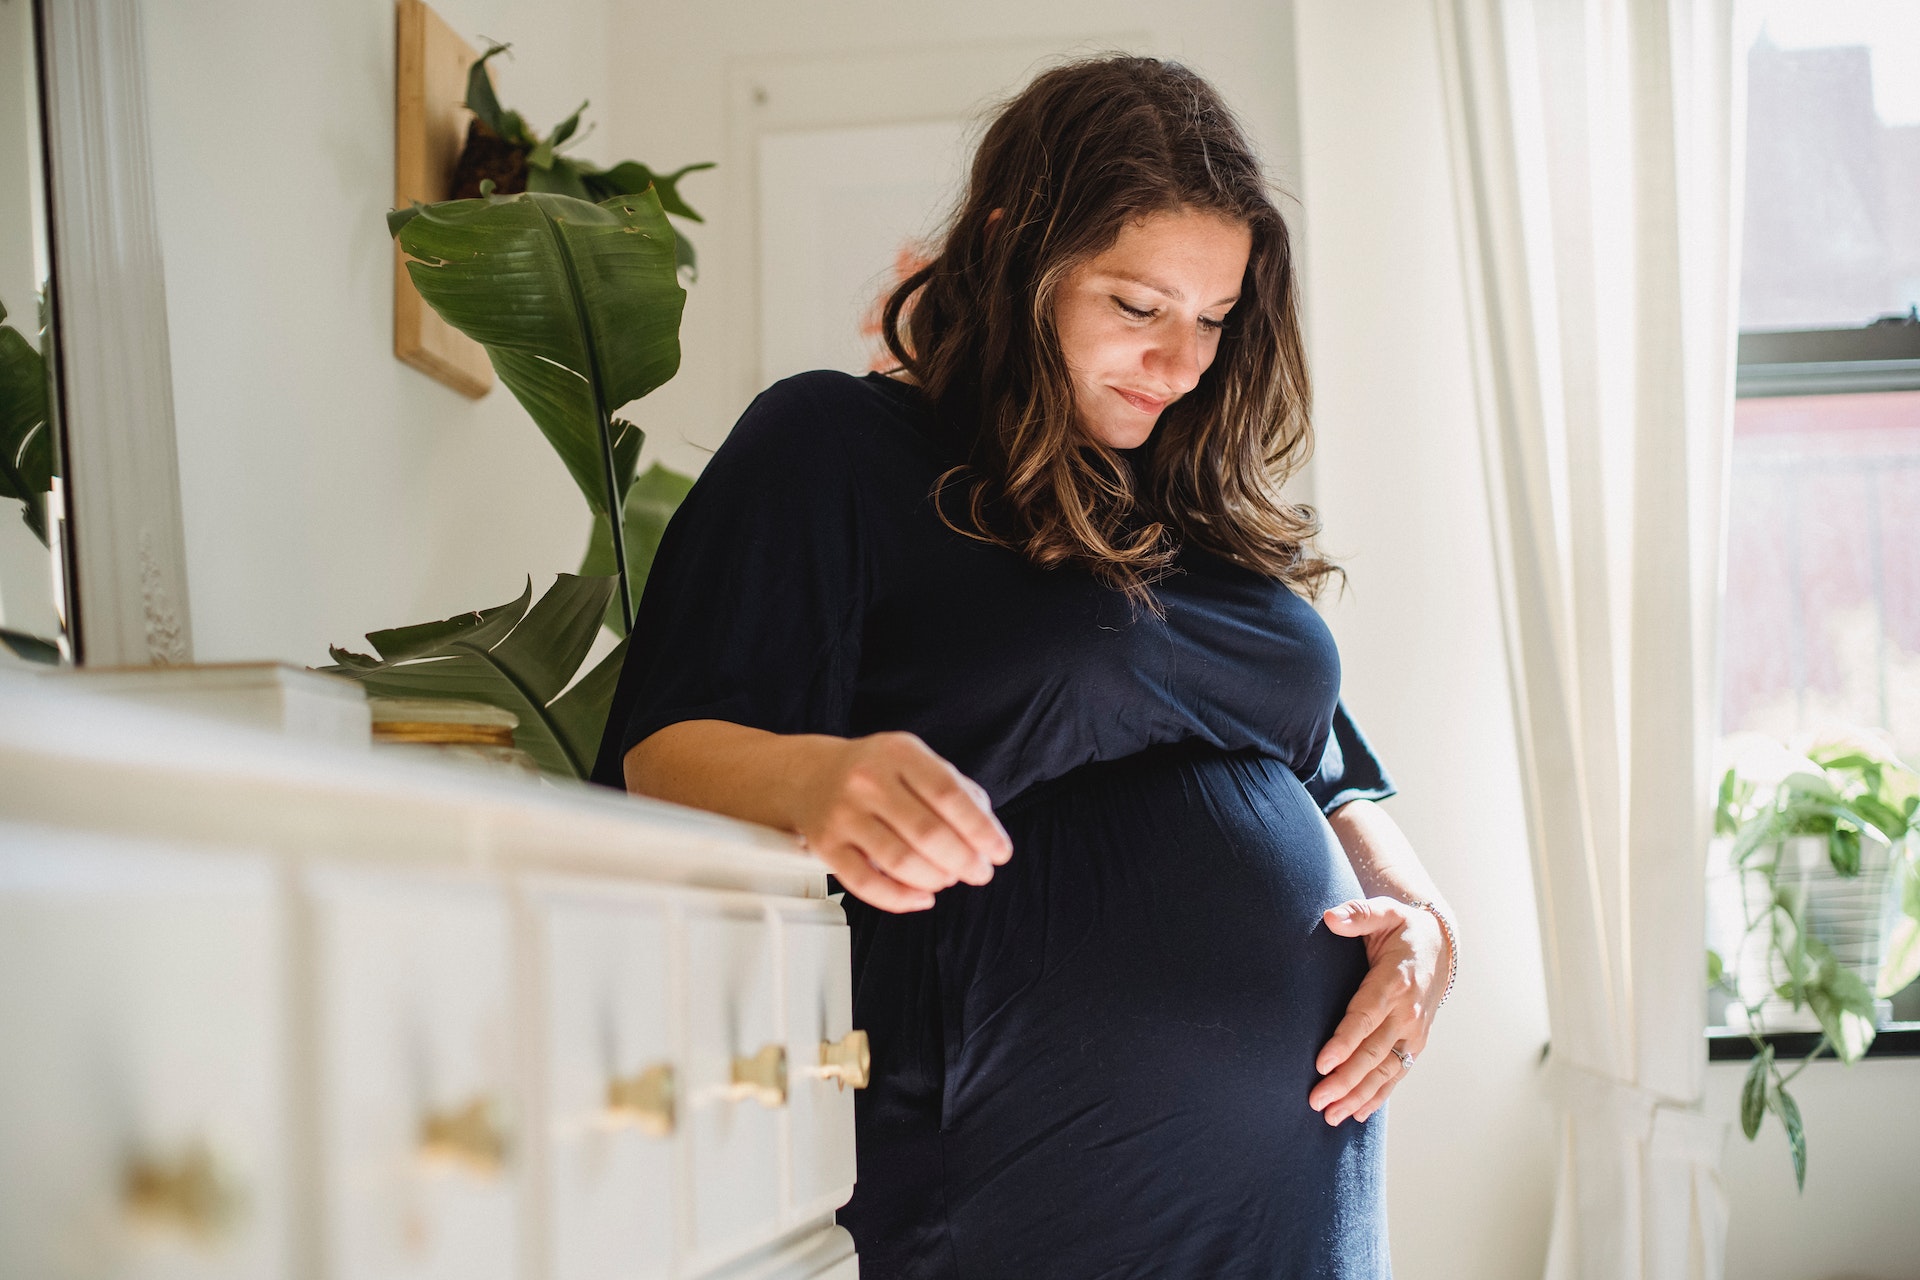 Como Influyen Los Relatos Y Testimonios Sobre El Parto En Mujeres Embarazadas